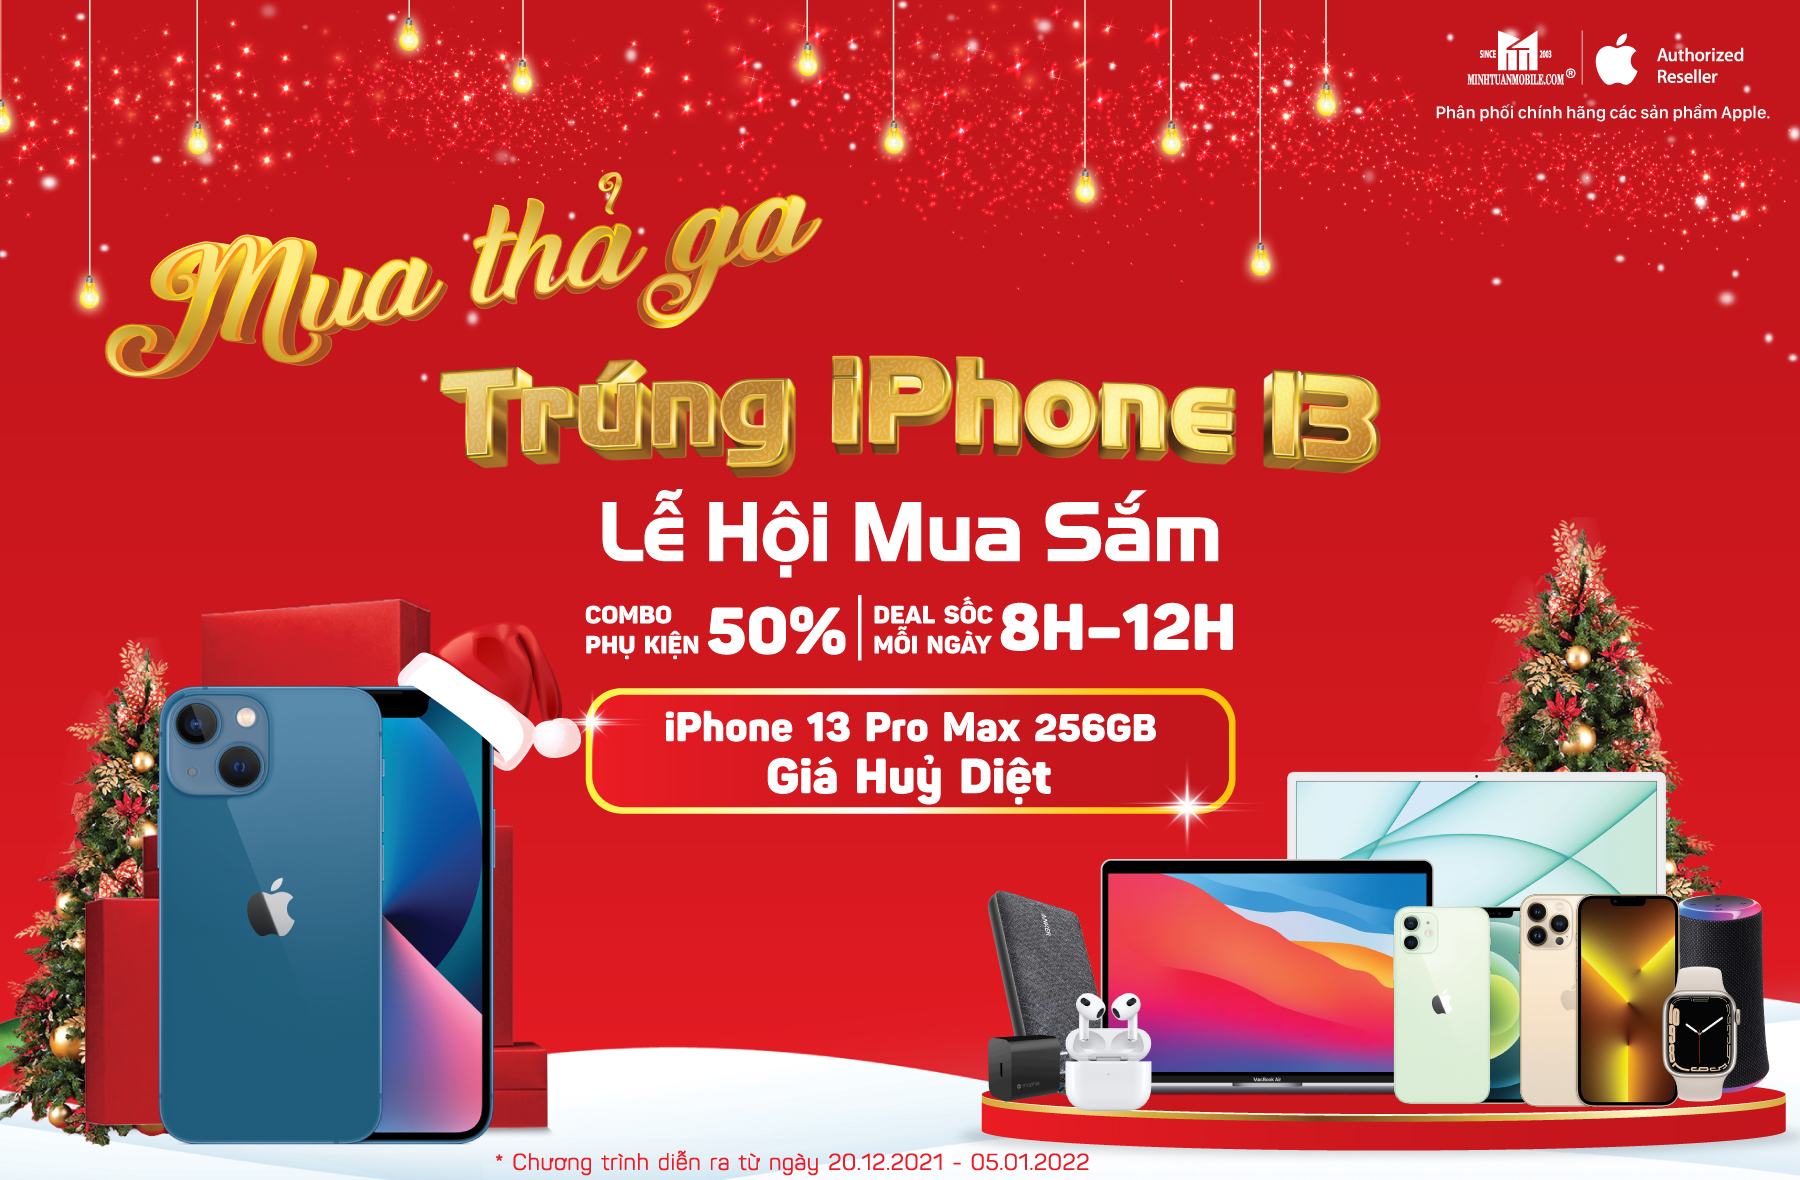 Sở hữu iPhone 13 cực dễ với chương trình Lễ hội mua sắm cuối năm của Minh Tuấn Mobile